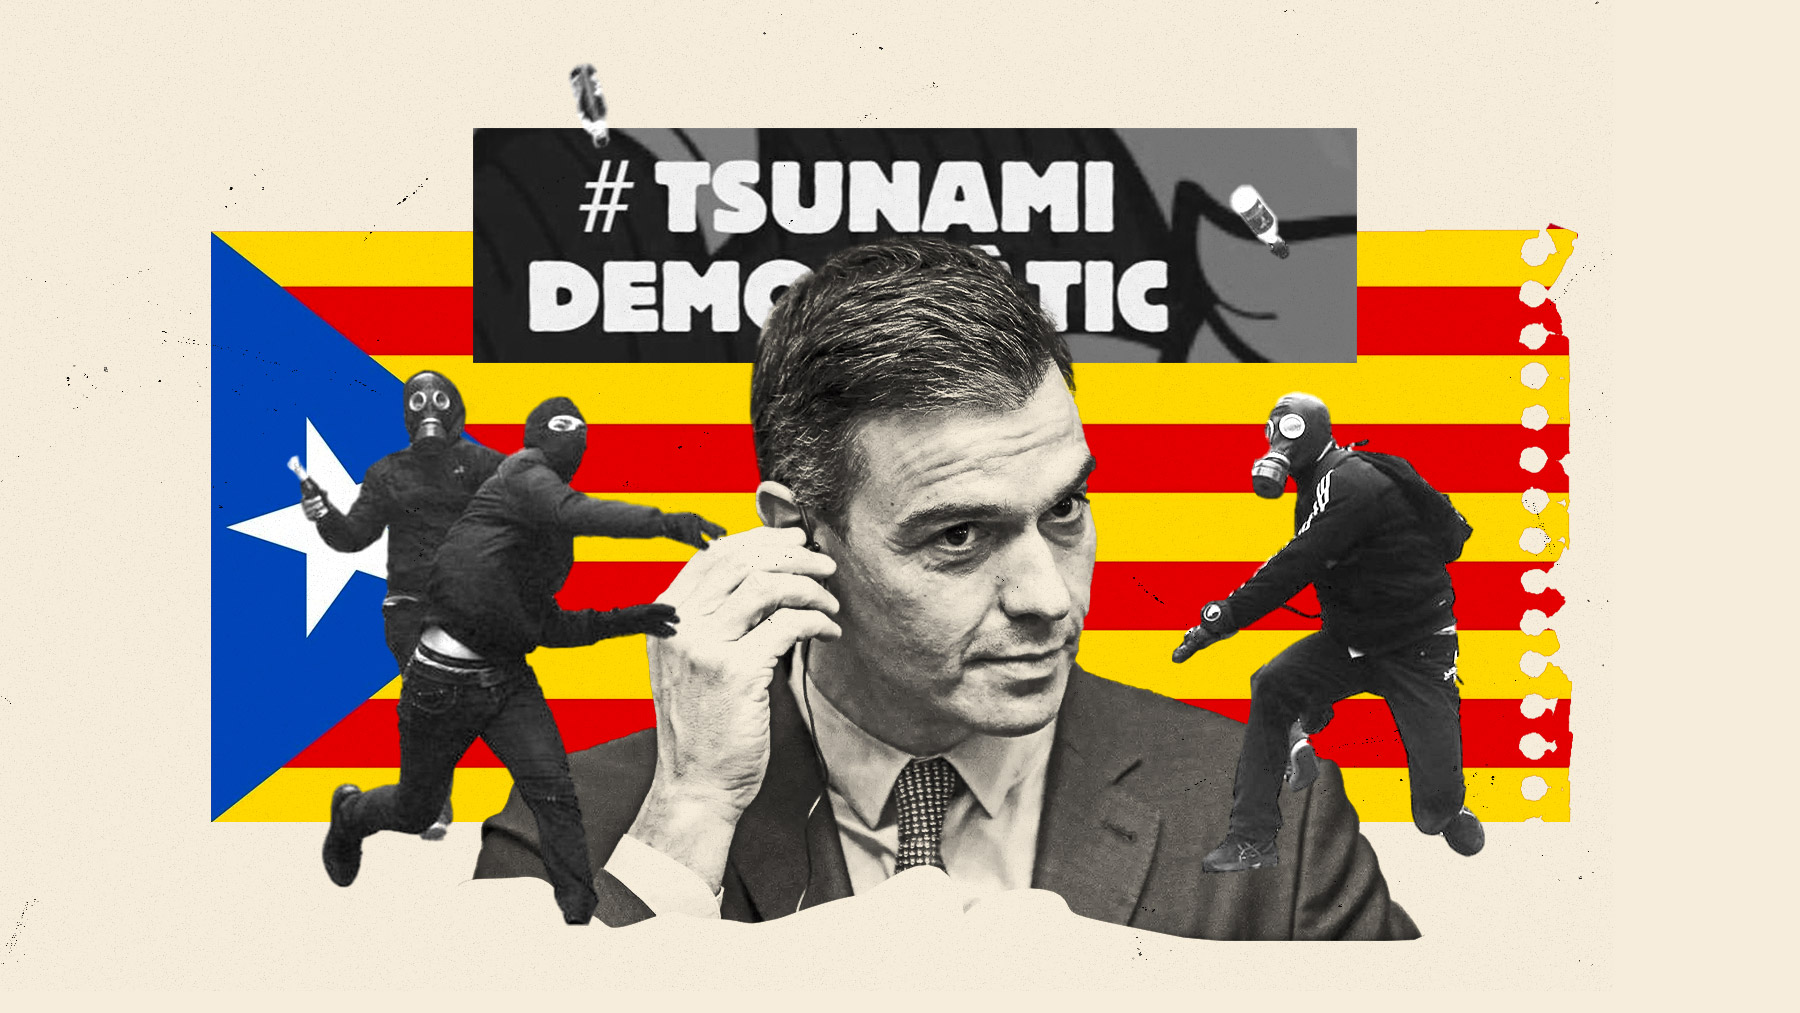 Tsunami Democratic